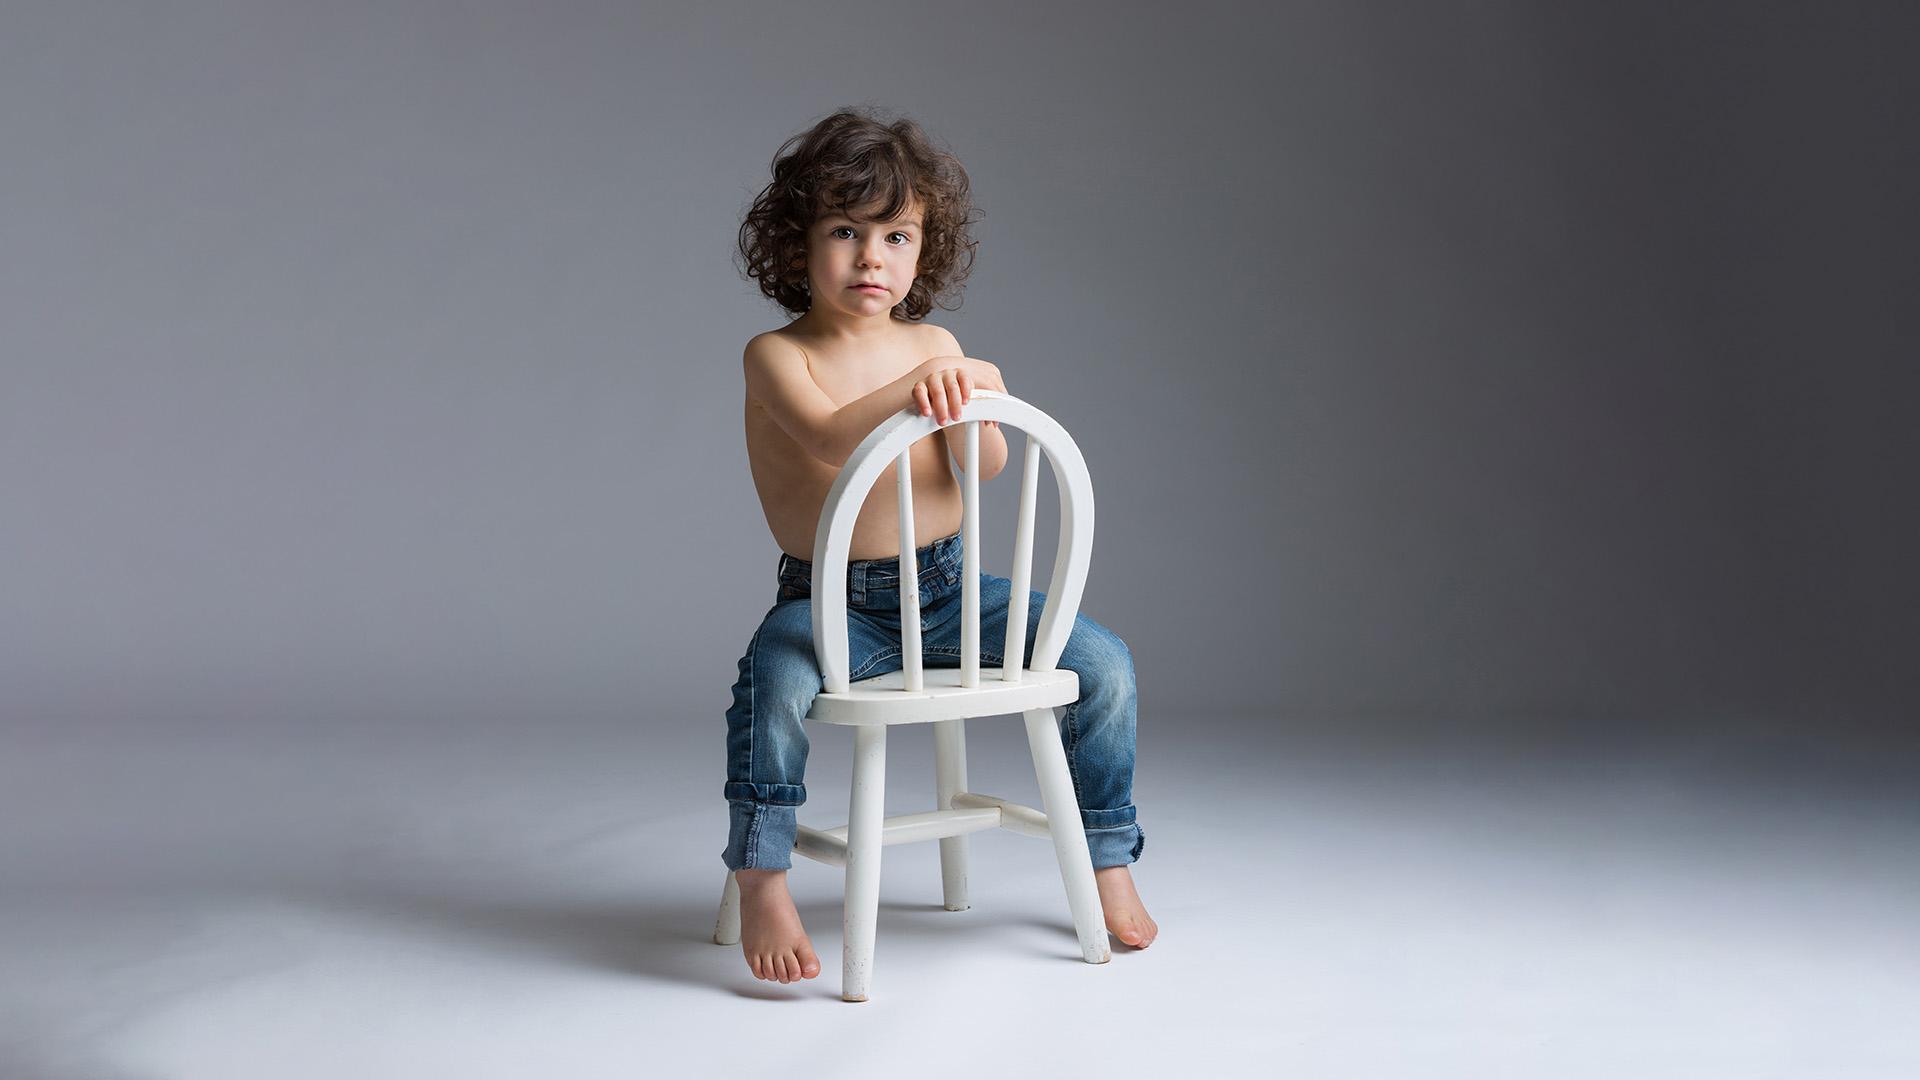 photo studio d'un petit garçon assis sur sa chaise